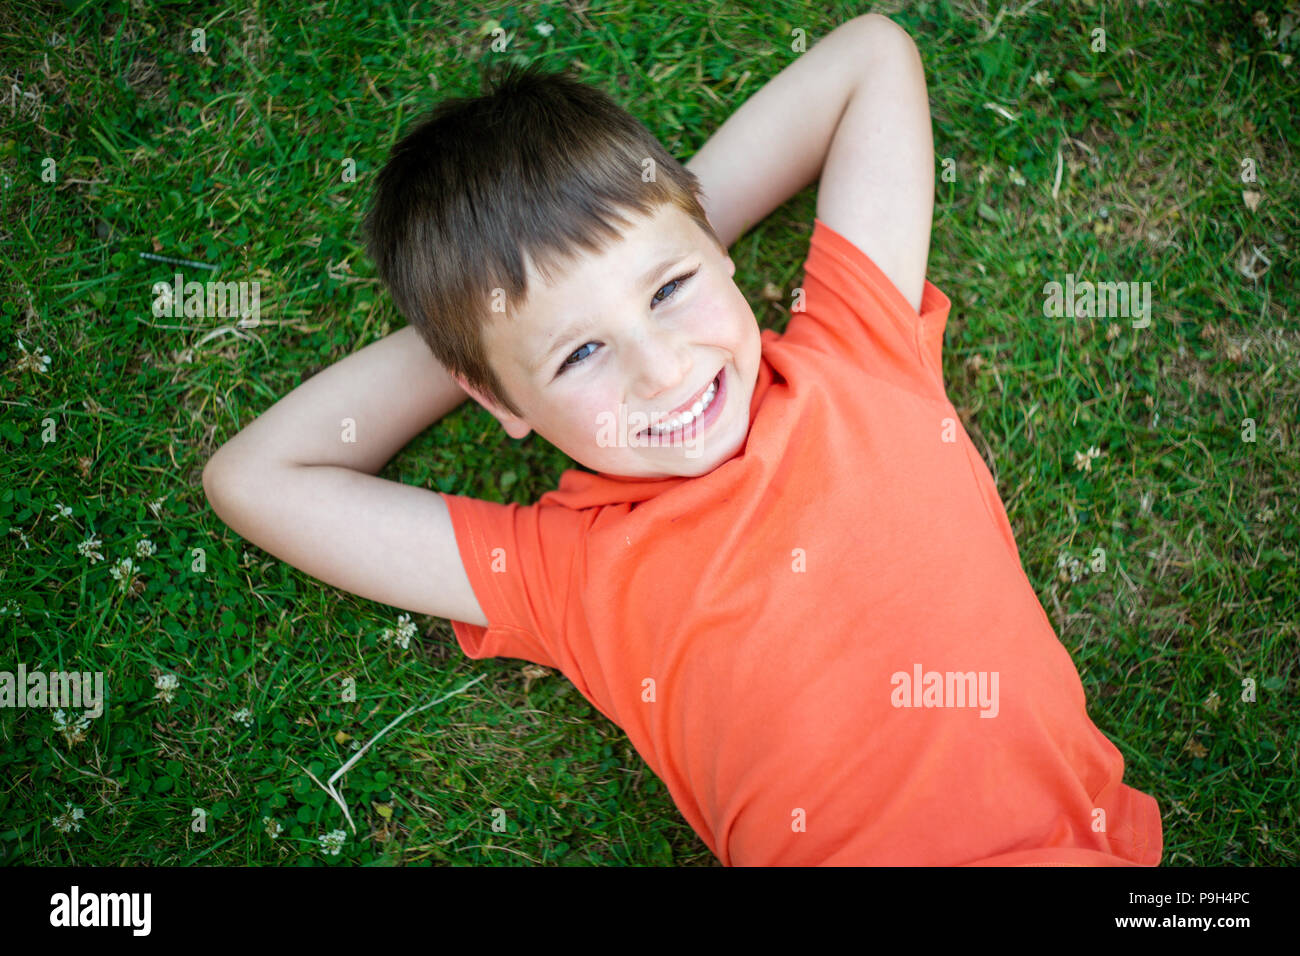 Lindo muchacho feliz 6 años recostados sobre el pasto verde y sonriente. Foto de stock